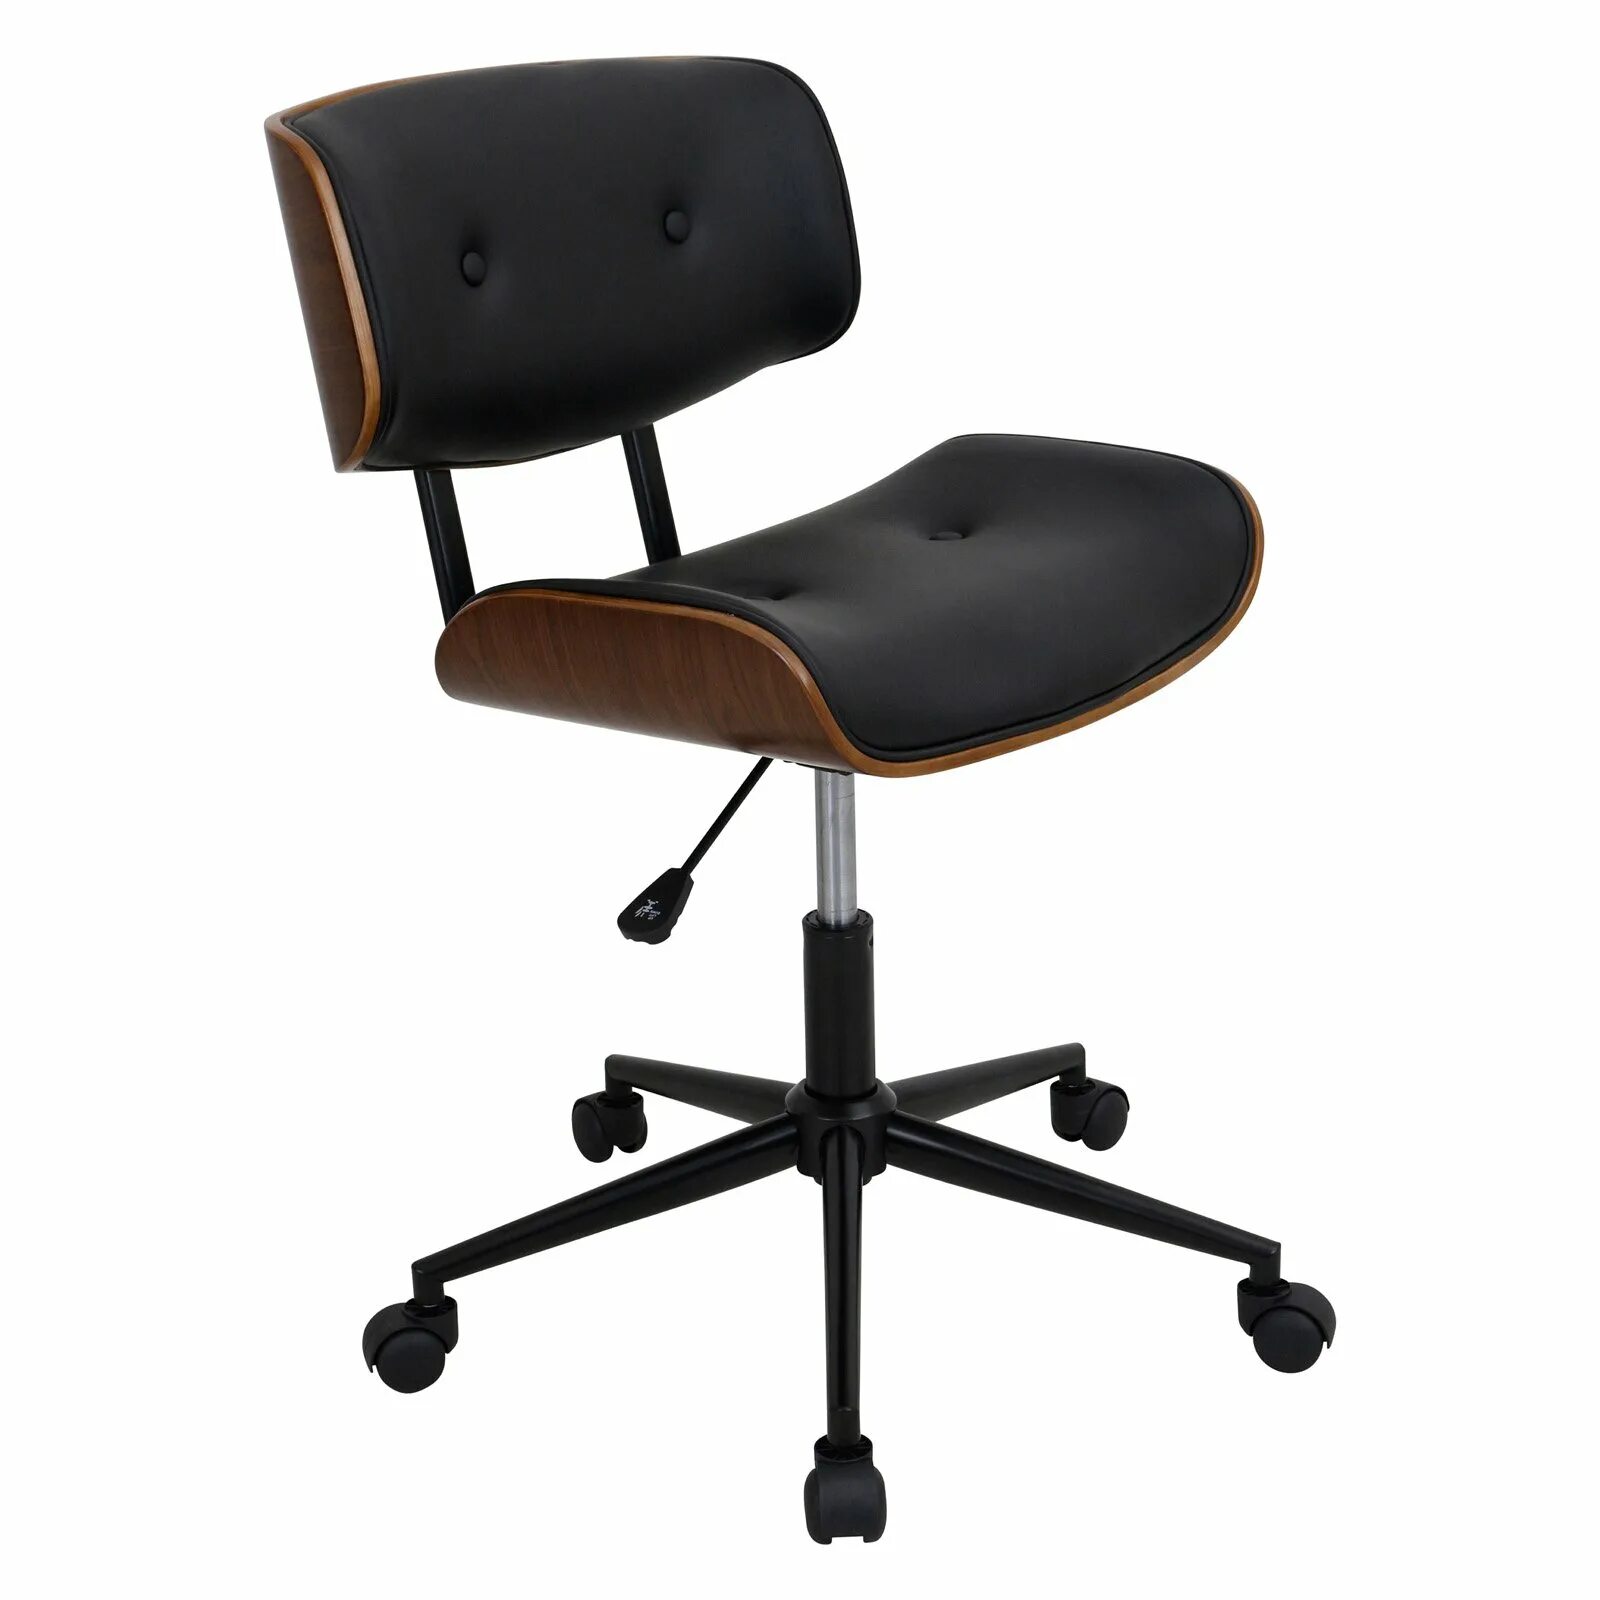 Где купить компьютерный стул. Кресло Savoy Leather Chair. Bentwood Swivel Office Chair. Офисный стул Mid Century. Стул Finley Swivel Office Chair.